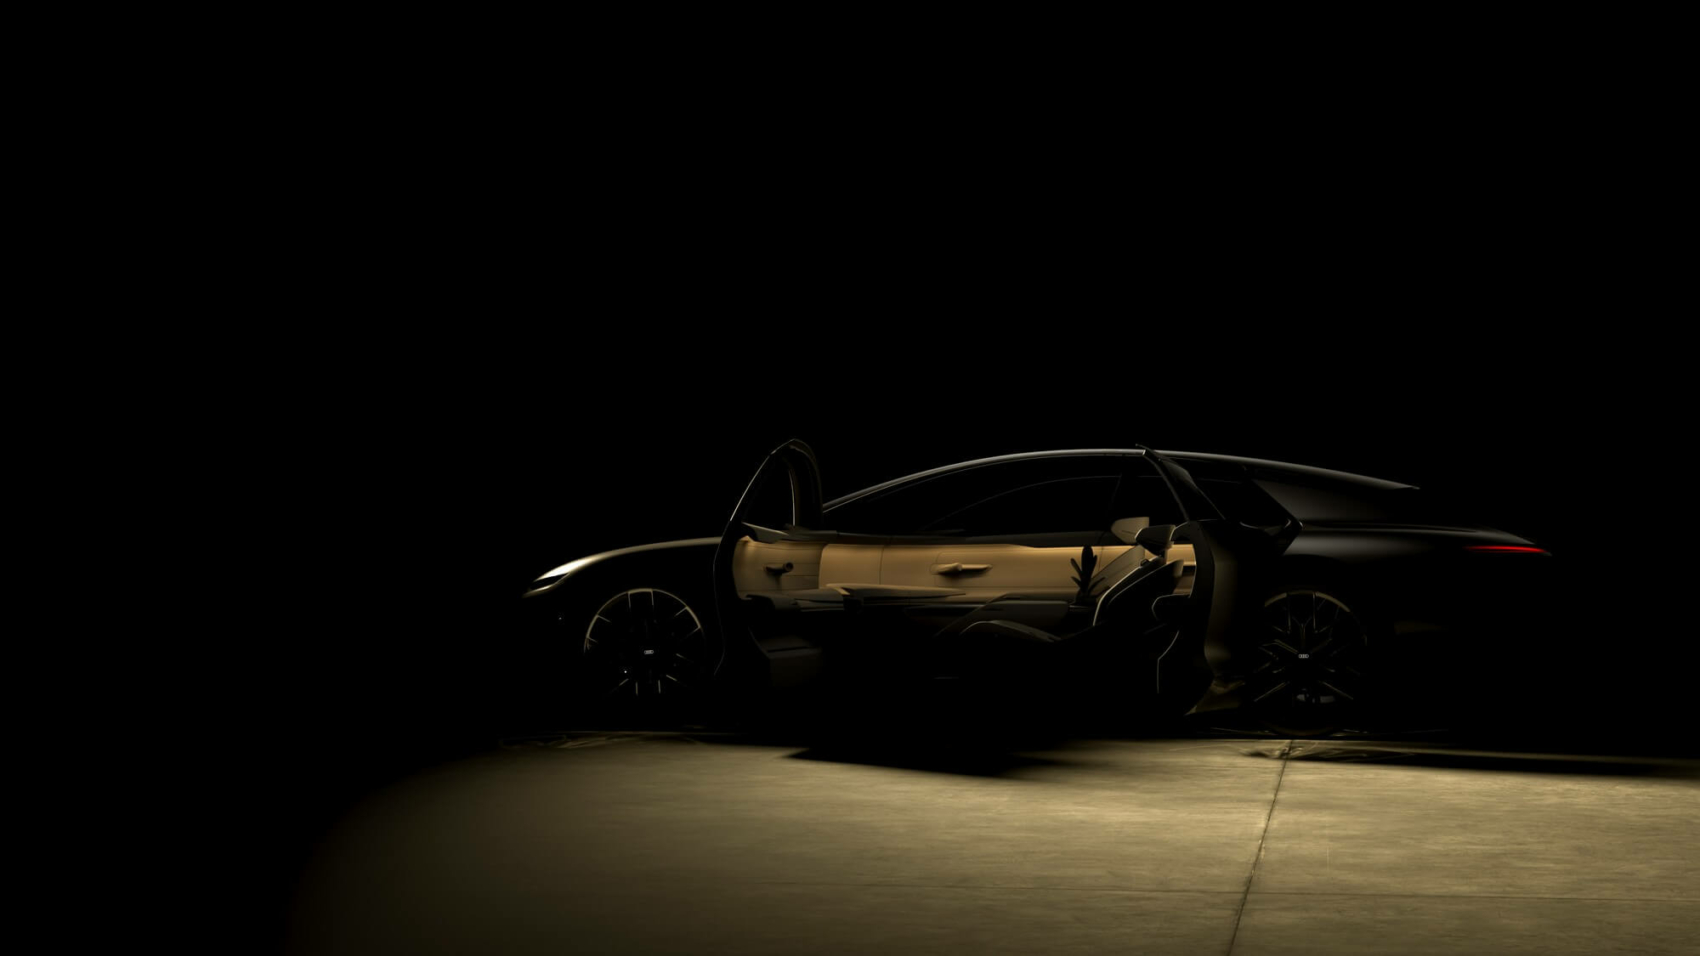 Audi Grand Sphere concept teaser